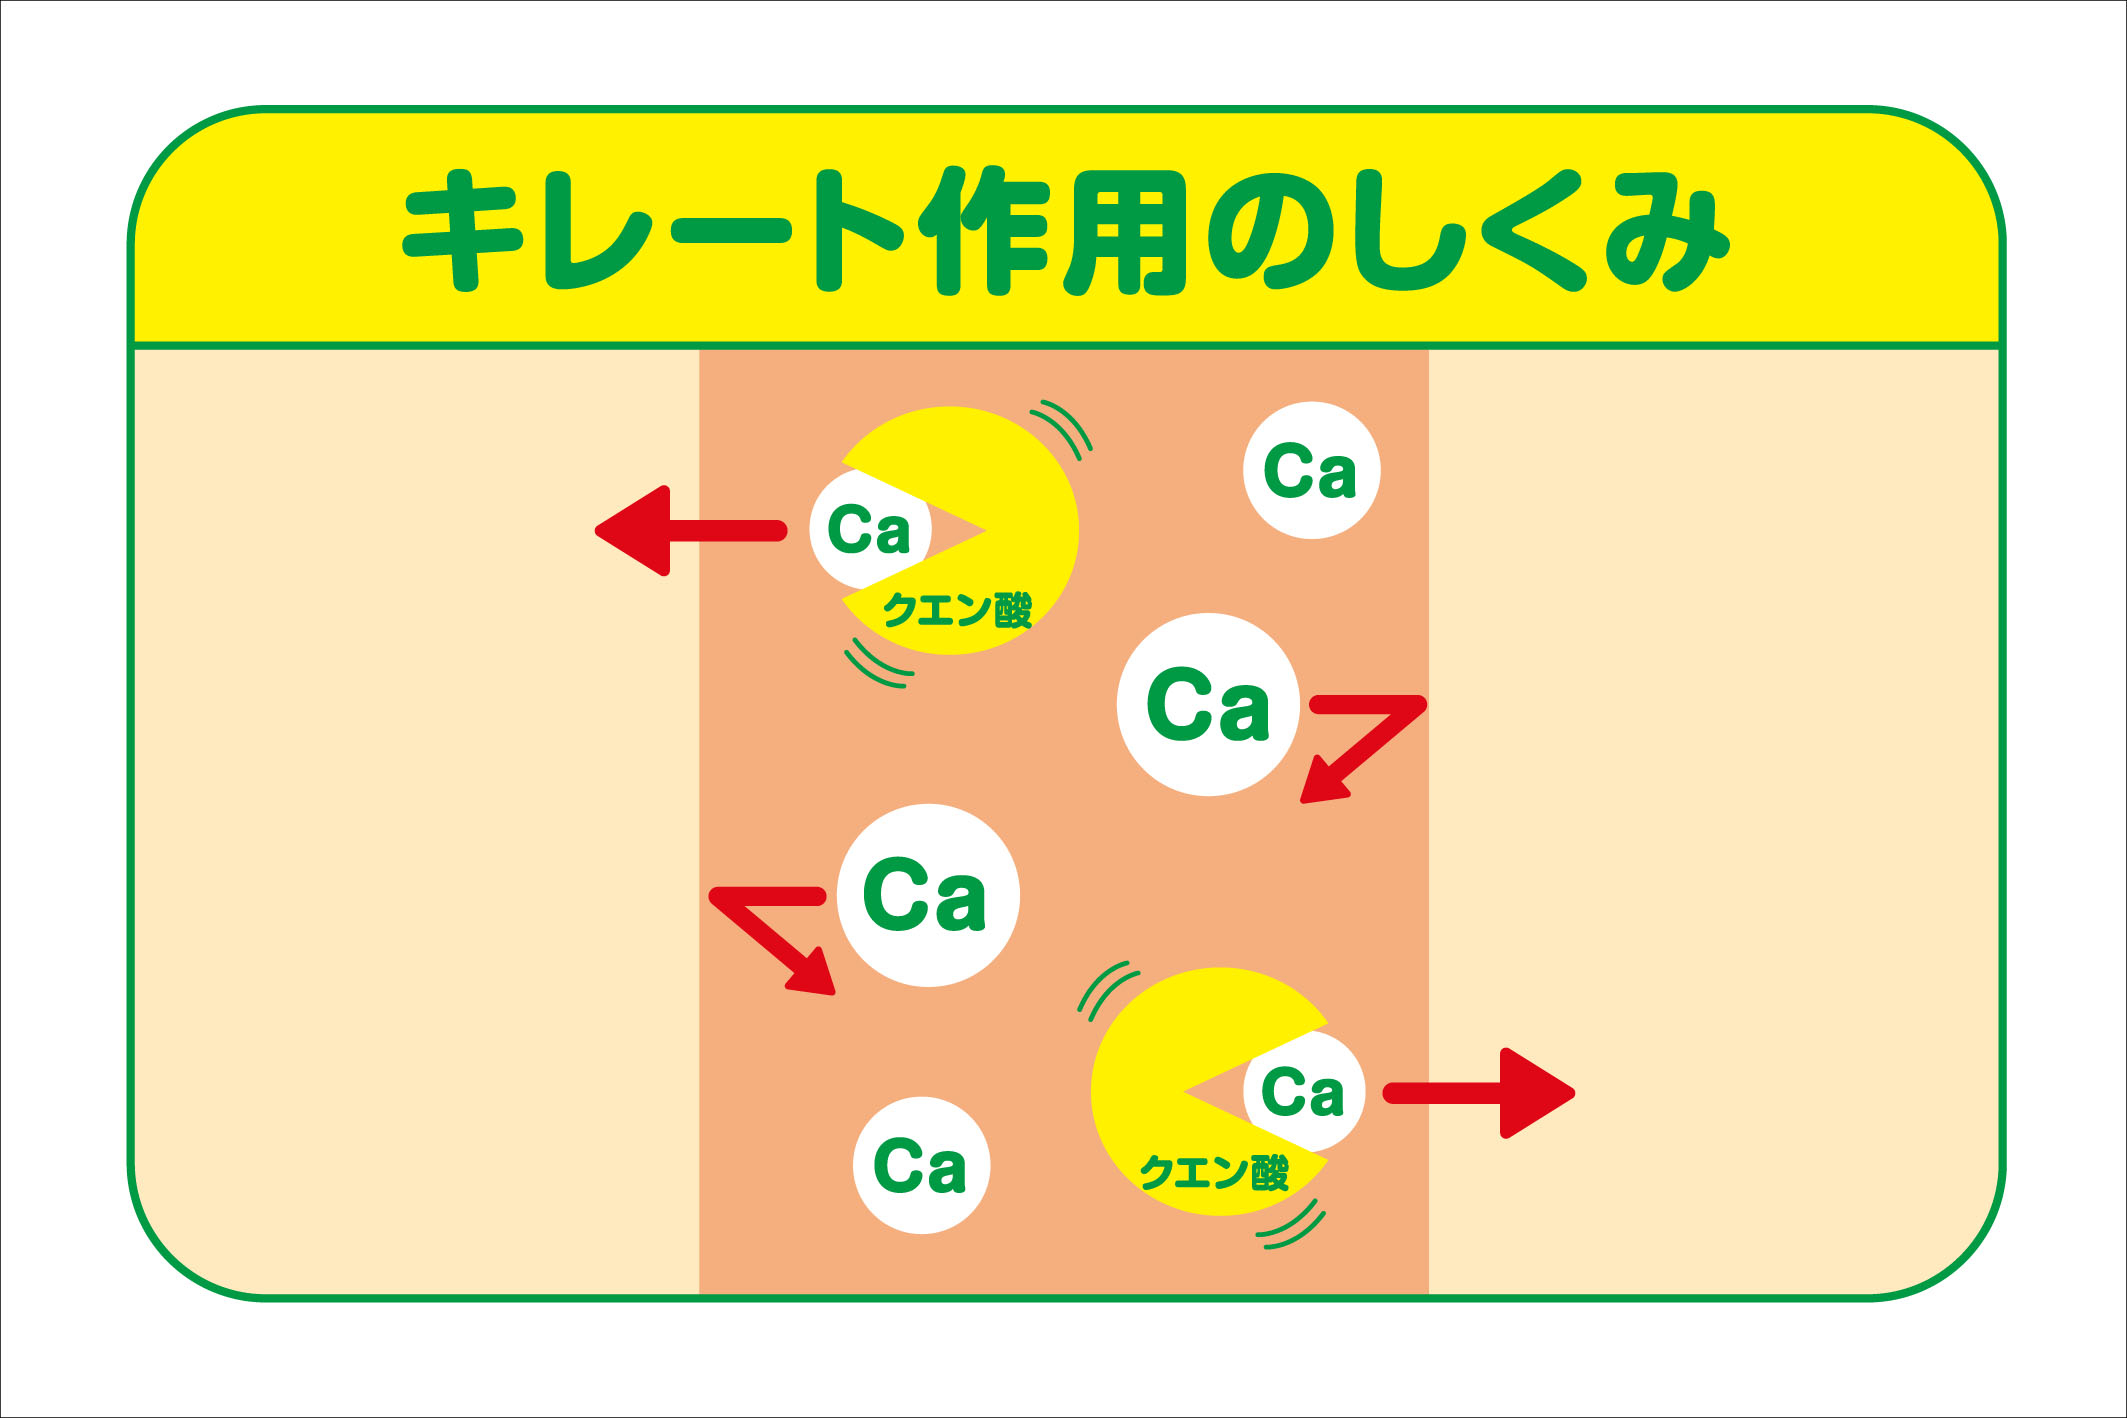 カルシウムの吸収を促進する、キレート作用